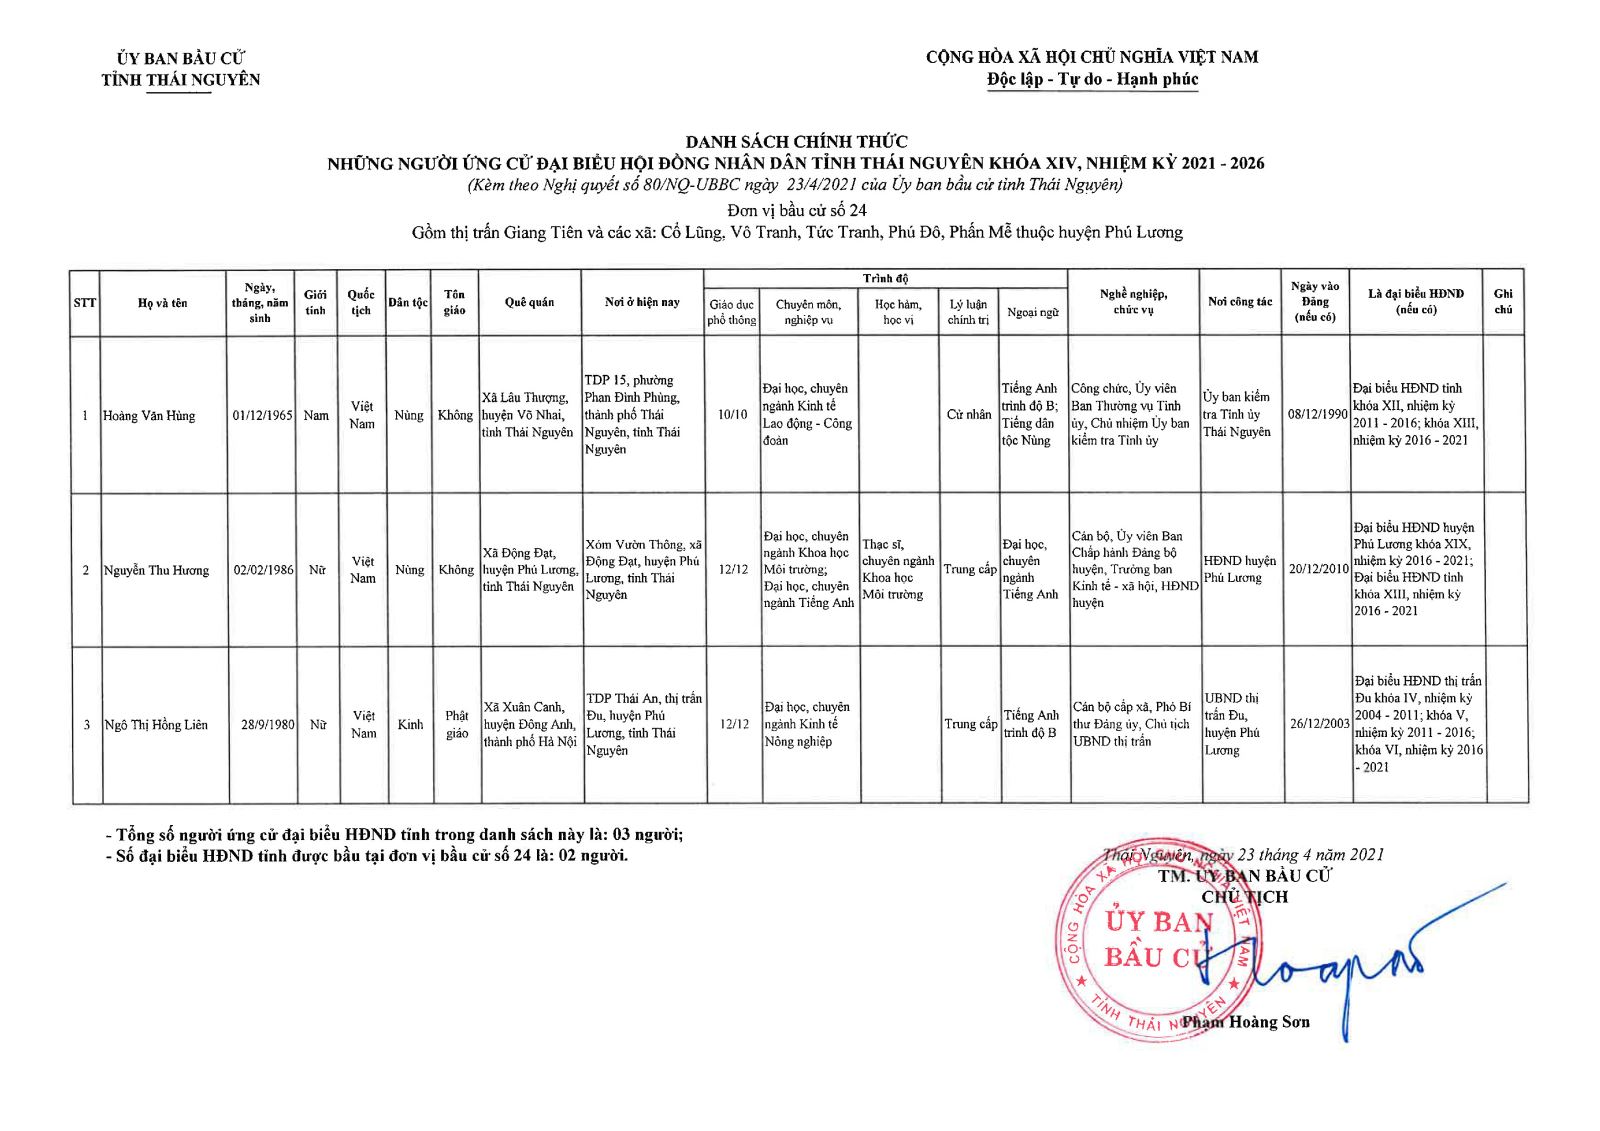 Danh sách chính thức những người ứng cử đại biểu Hội đồng nhân dân tỉnh Thái Nguyên khóa XIV, nhiệm kỳ 2021 - 2026 -4